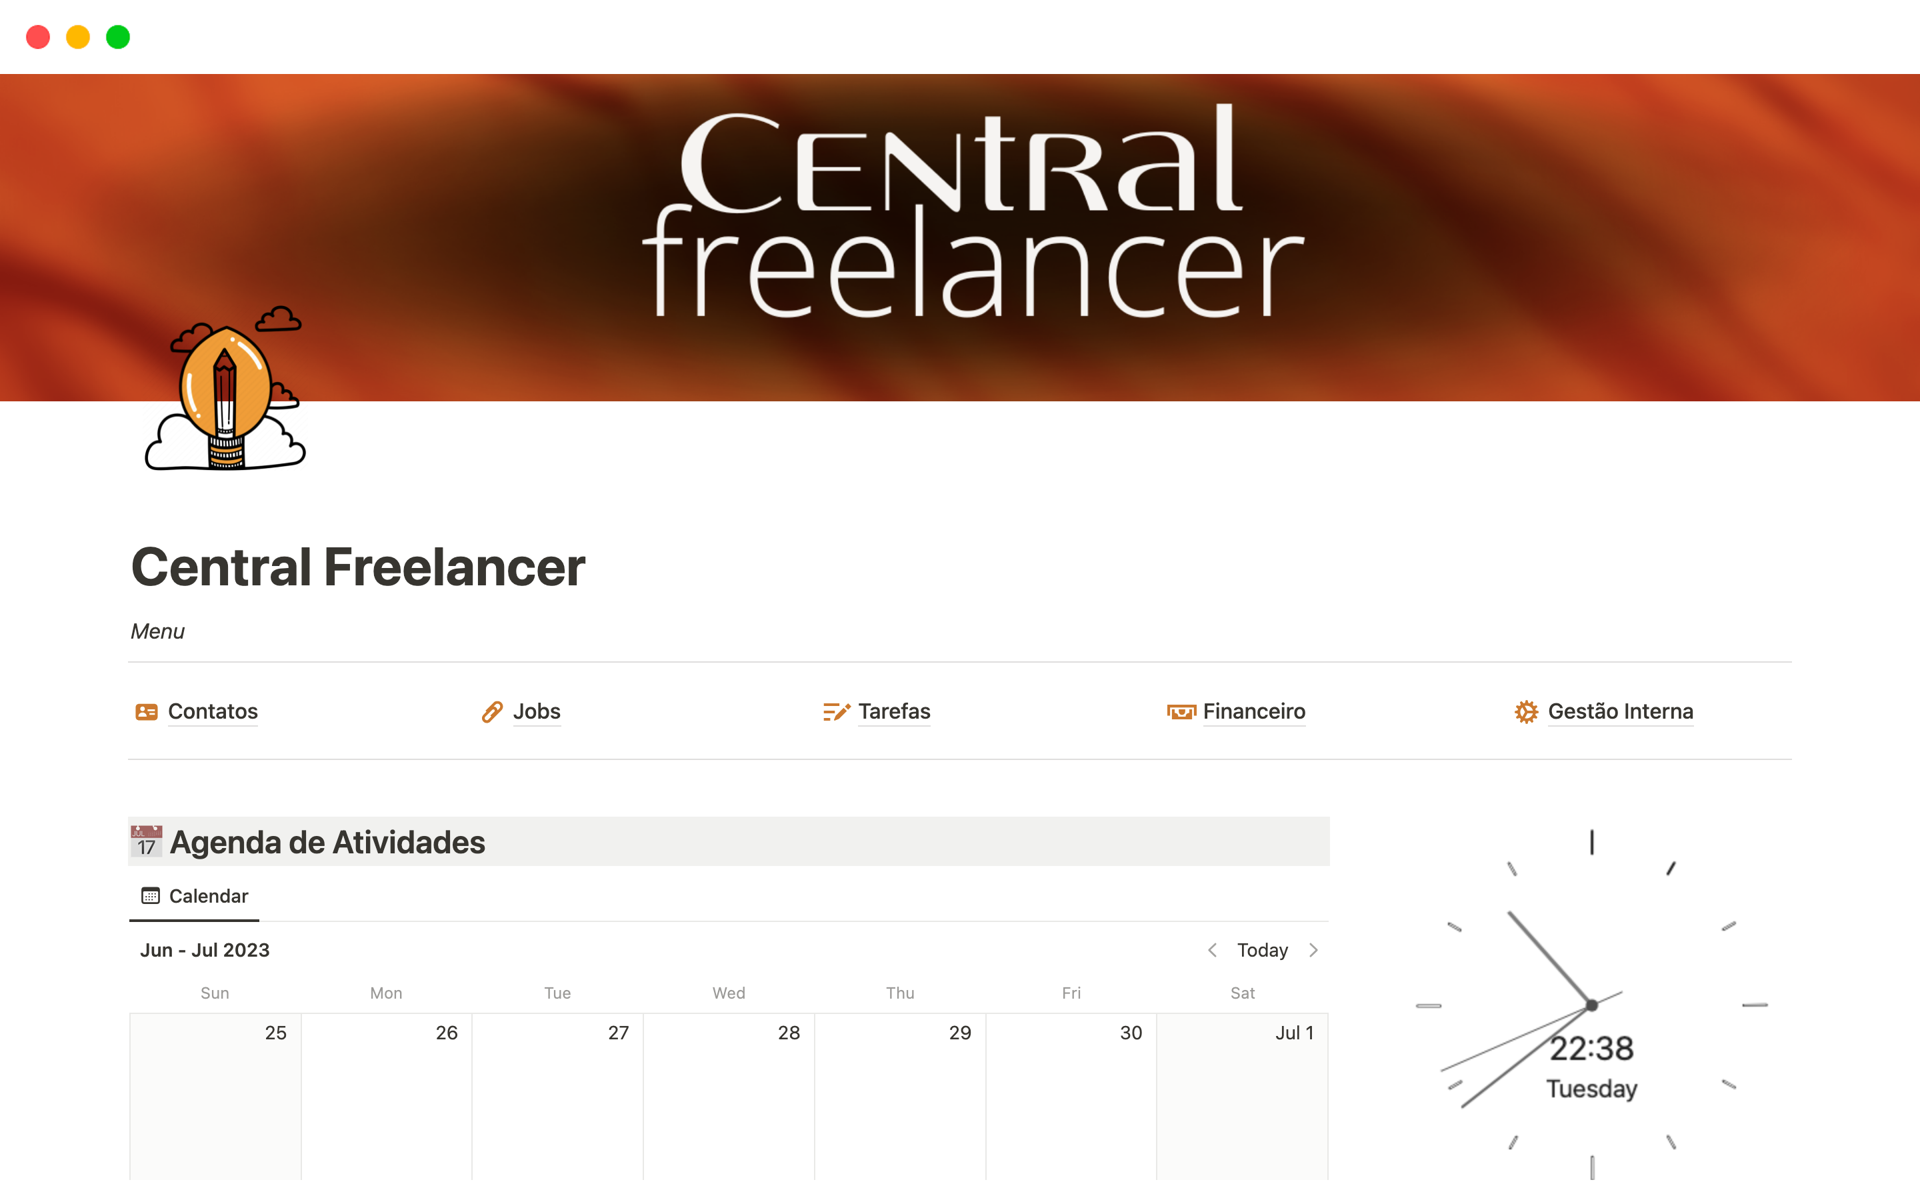 Vista previa de plantilla para Central Freelancer